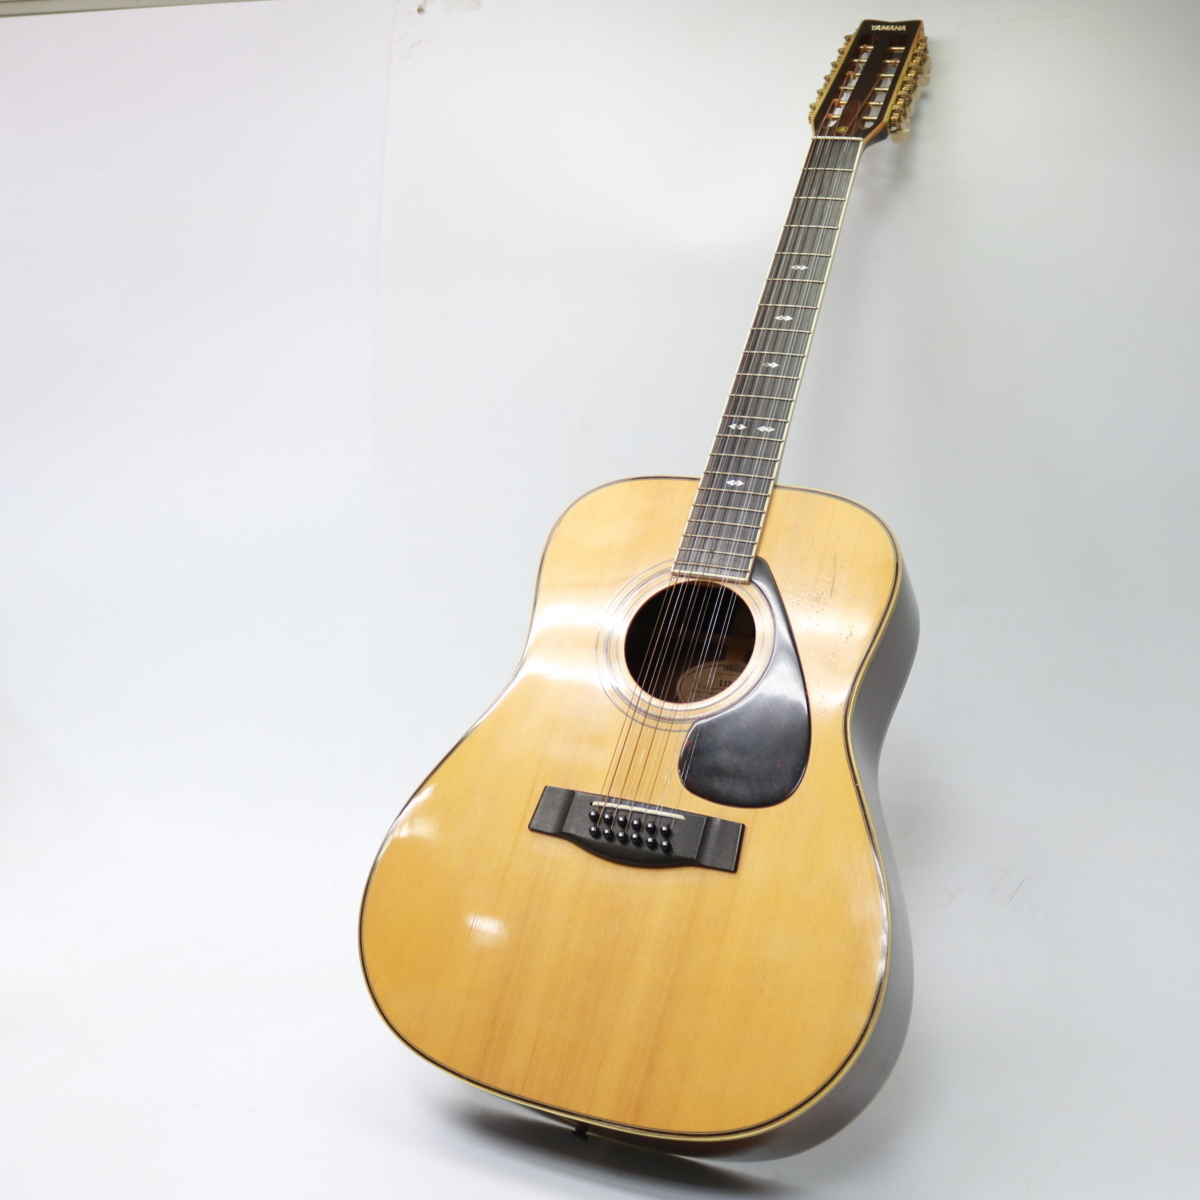 東京都練馬区にて ヤマハ アコースティックギター 12弦 L12-8 1980年代 を出張買取させて頂きました。